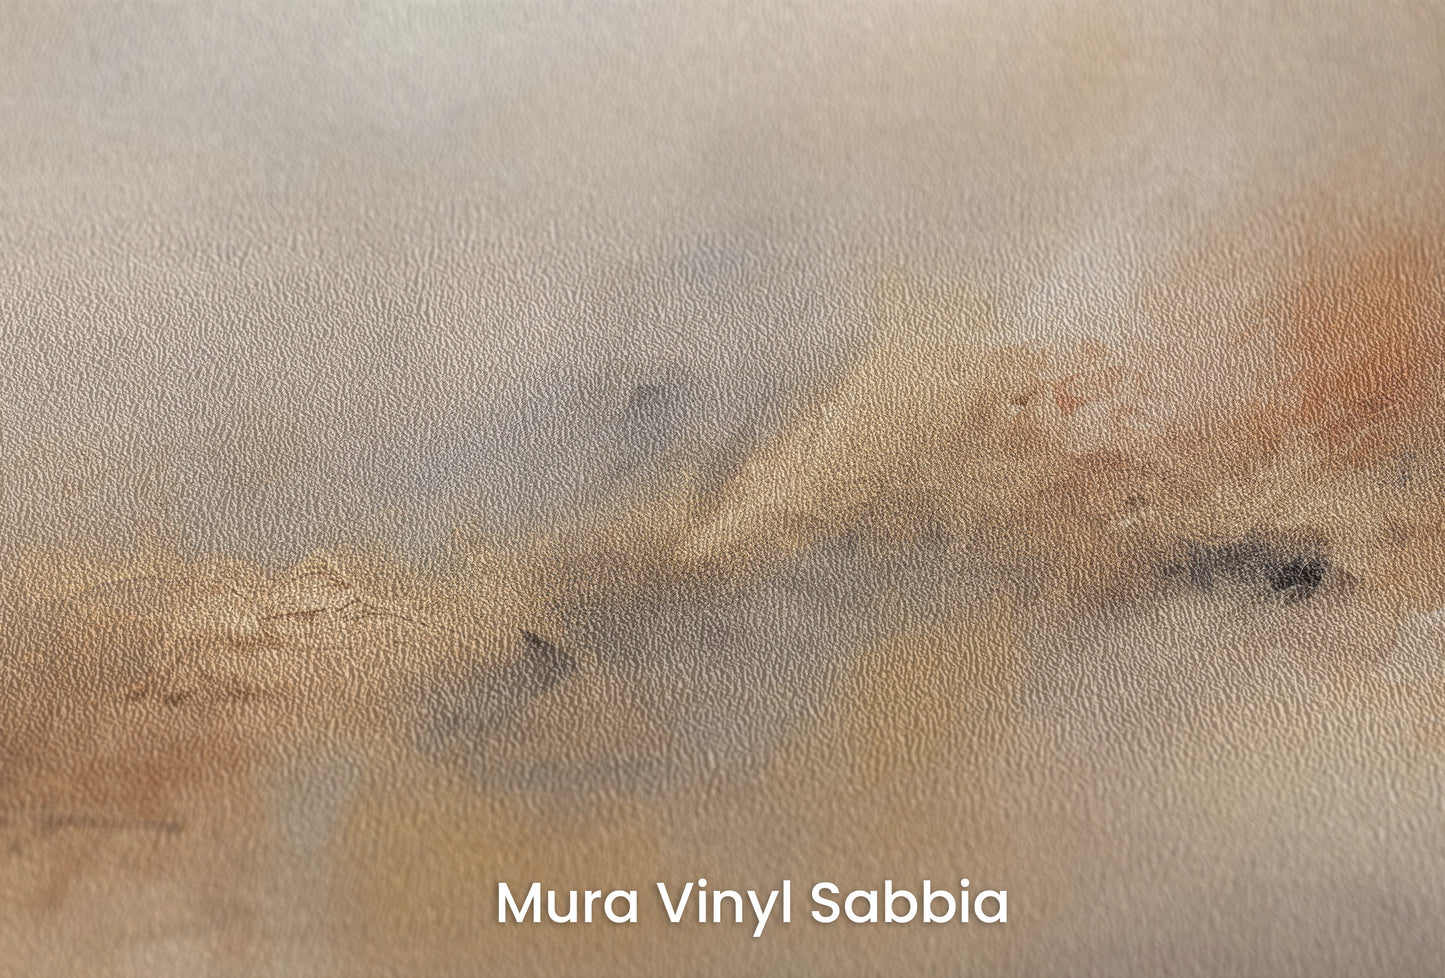 Zbliżenie na artystyczną fototapetę o nazwie HORIZON GLOW ABSTRACTION na podłożu Mura Vinyl Sabbia struktura grubego ziarna piasku.